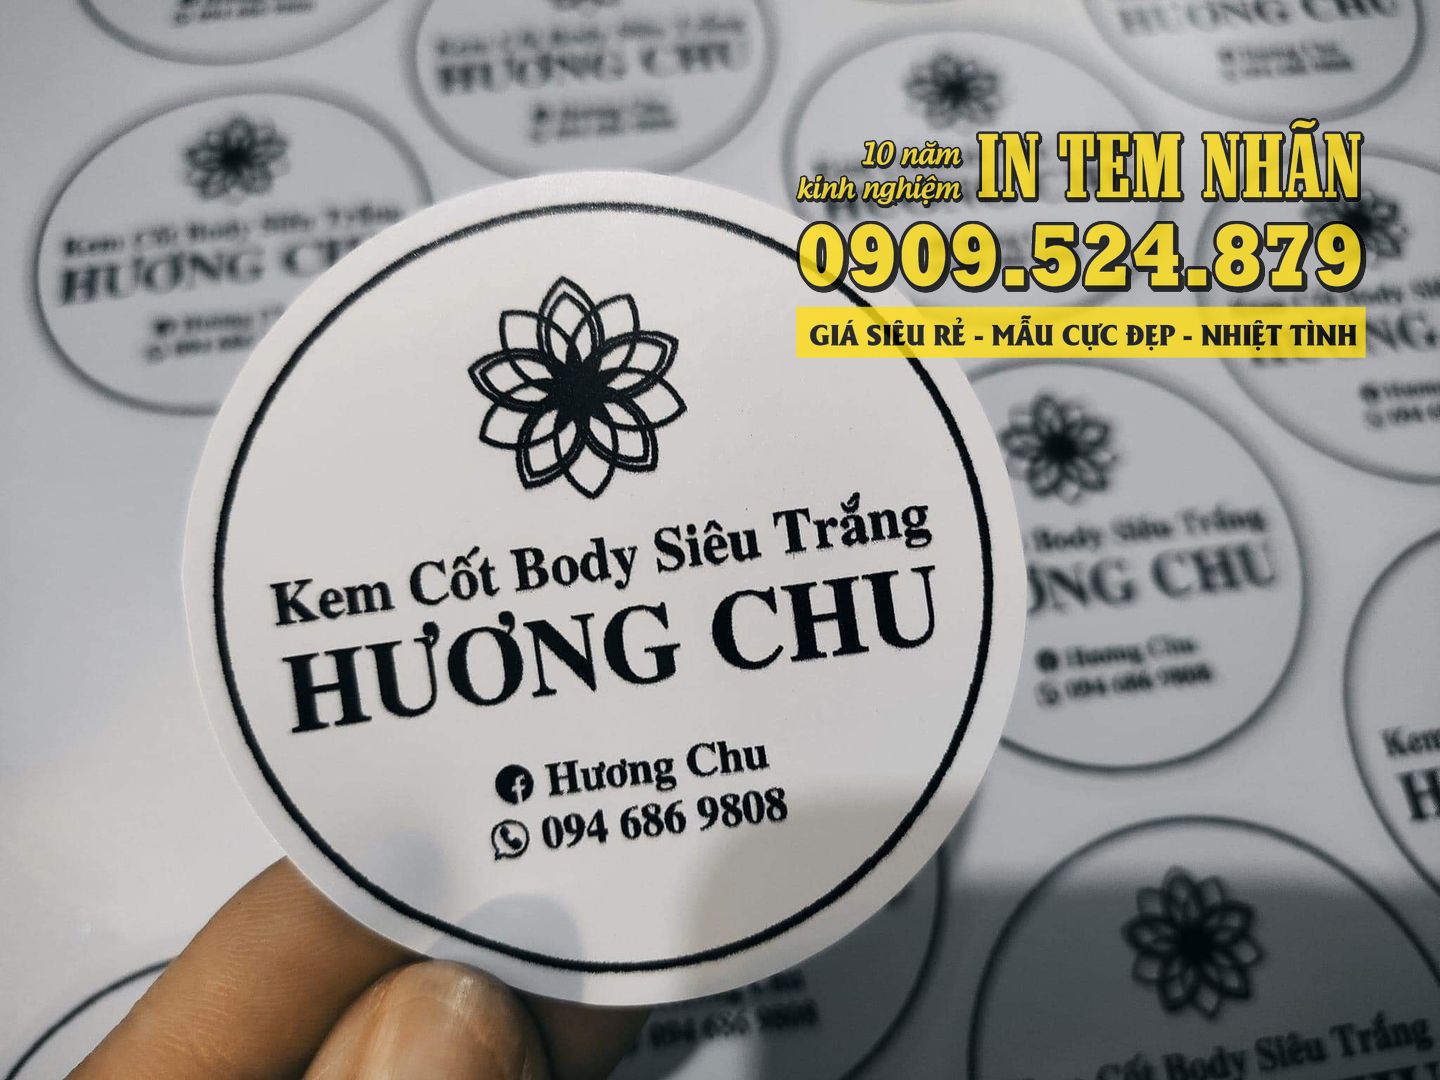 Mẫu Tem Nhãn mỹ phẩm kem cốt body siêu trắng Hương Chu